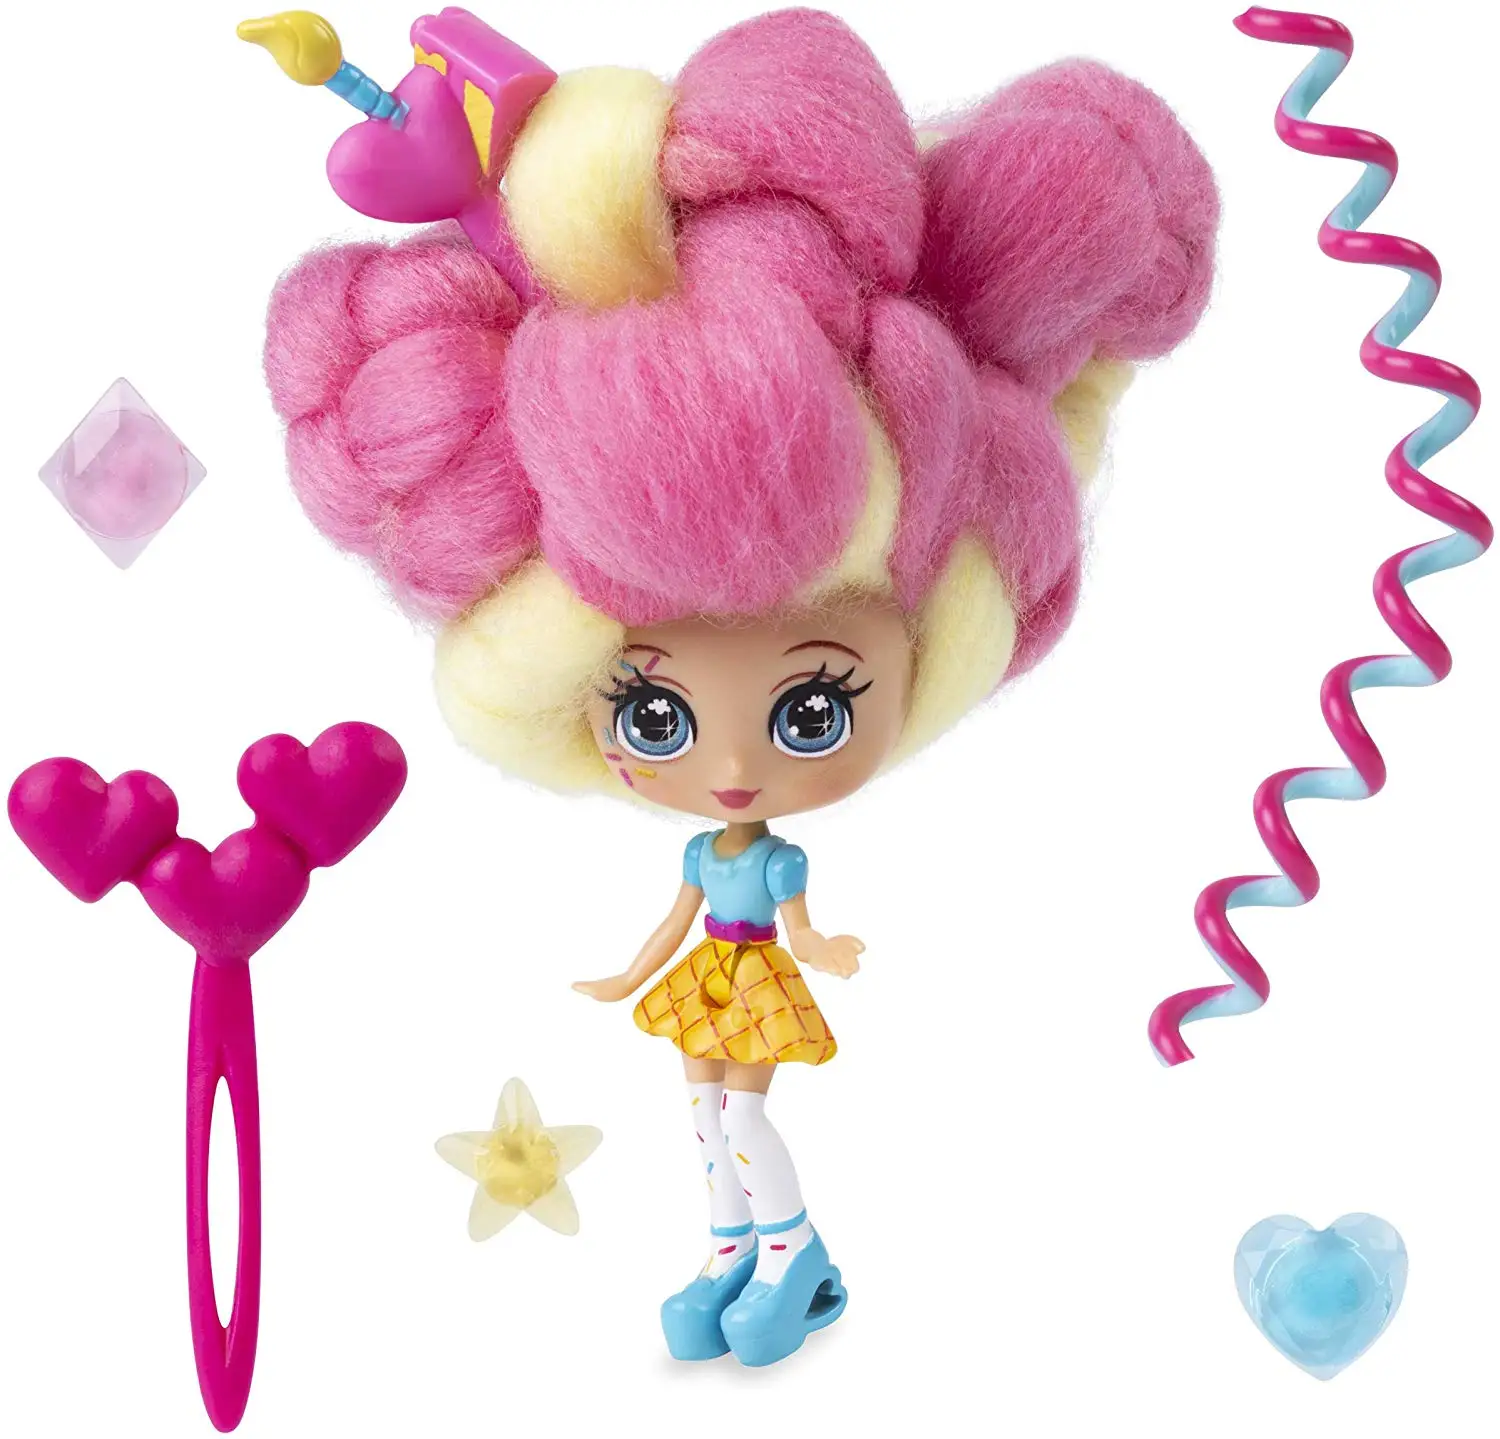 Candylocks волосы куклы игрушка для девочки с ароматом сладкое угощение куклы для хобби аксессуары Зефир сюрприз прическа подарок